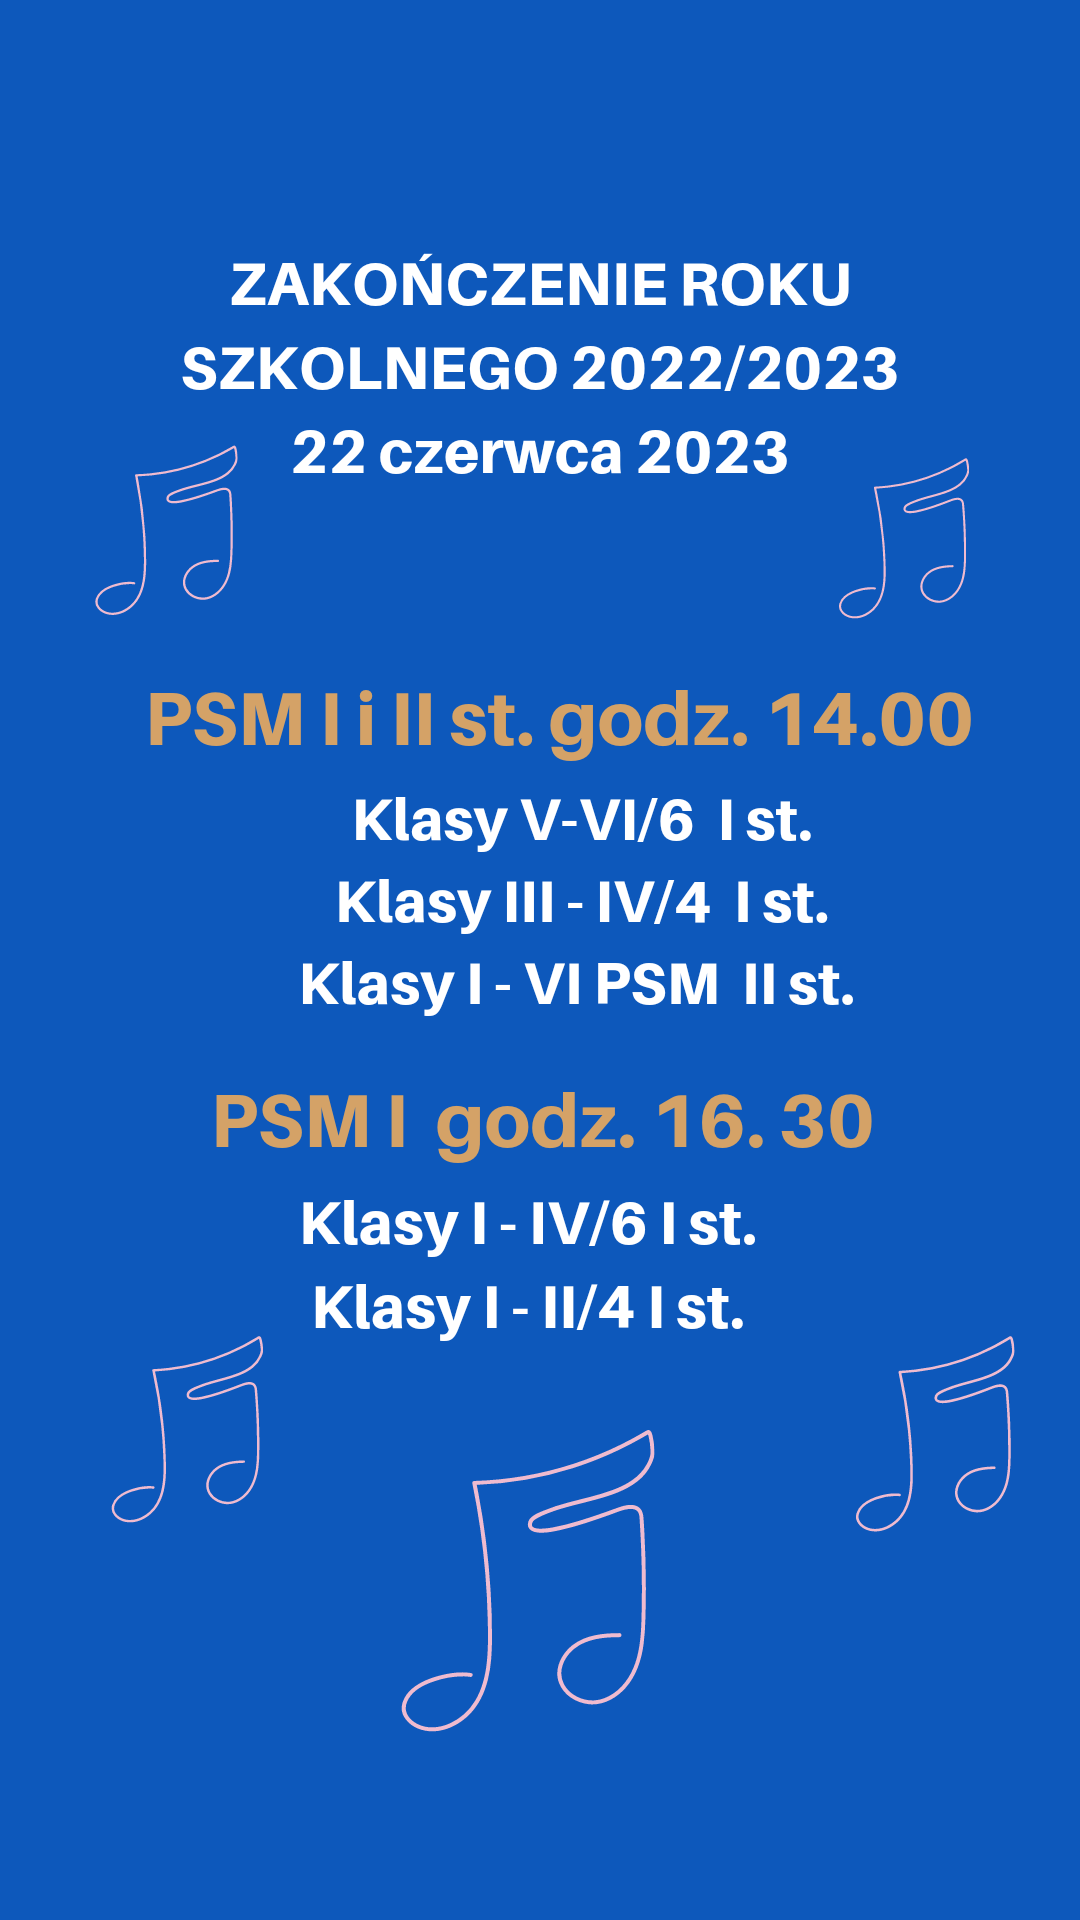 Plakat informacyjny o zakończeniu roku szkolnego w dniu 22 czerwca 2023 dla uczniów Państwowej Szkoły Muzycznej I i II stopnia im. Witolda Lutosławskiego w Stargardzie.